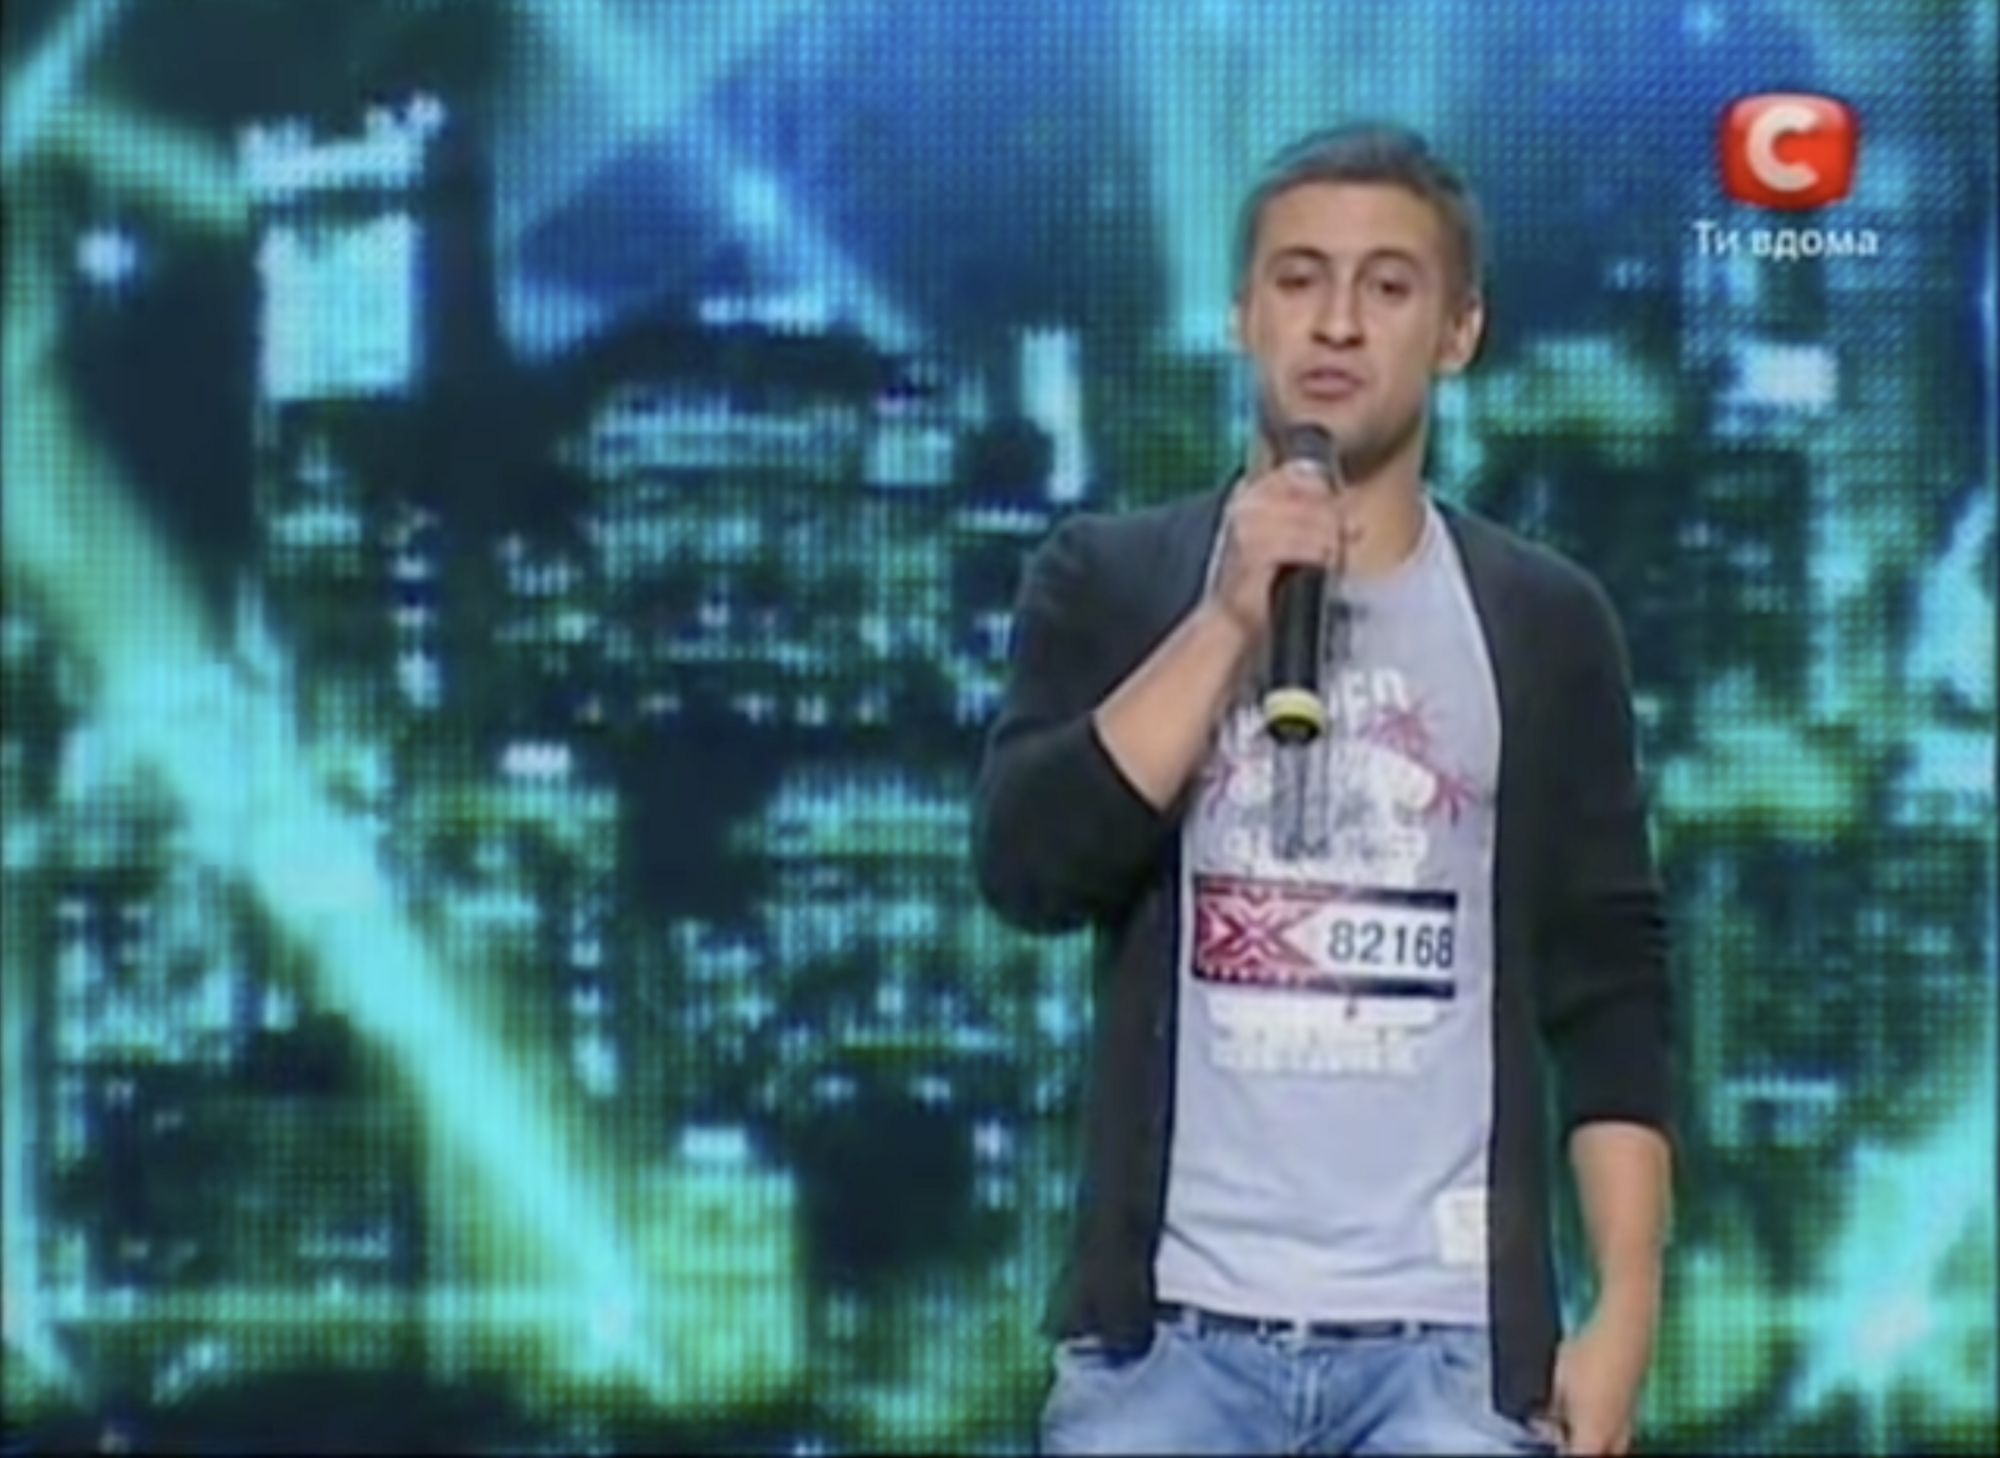  "Ти не будеш блищати": як у 2010 році Серьога спробував принизити Діму Монатіка на "Х-Факторі", а він став найкращим співаком України